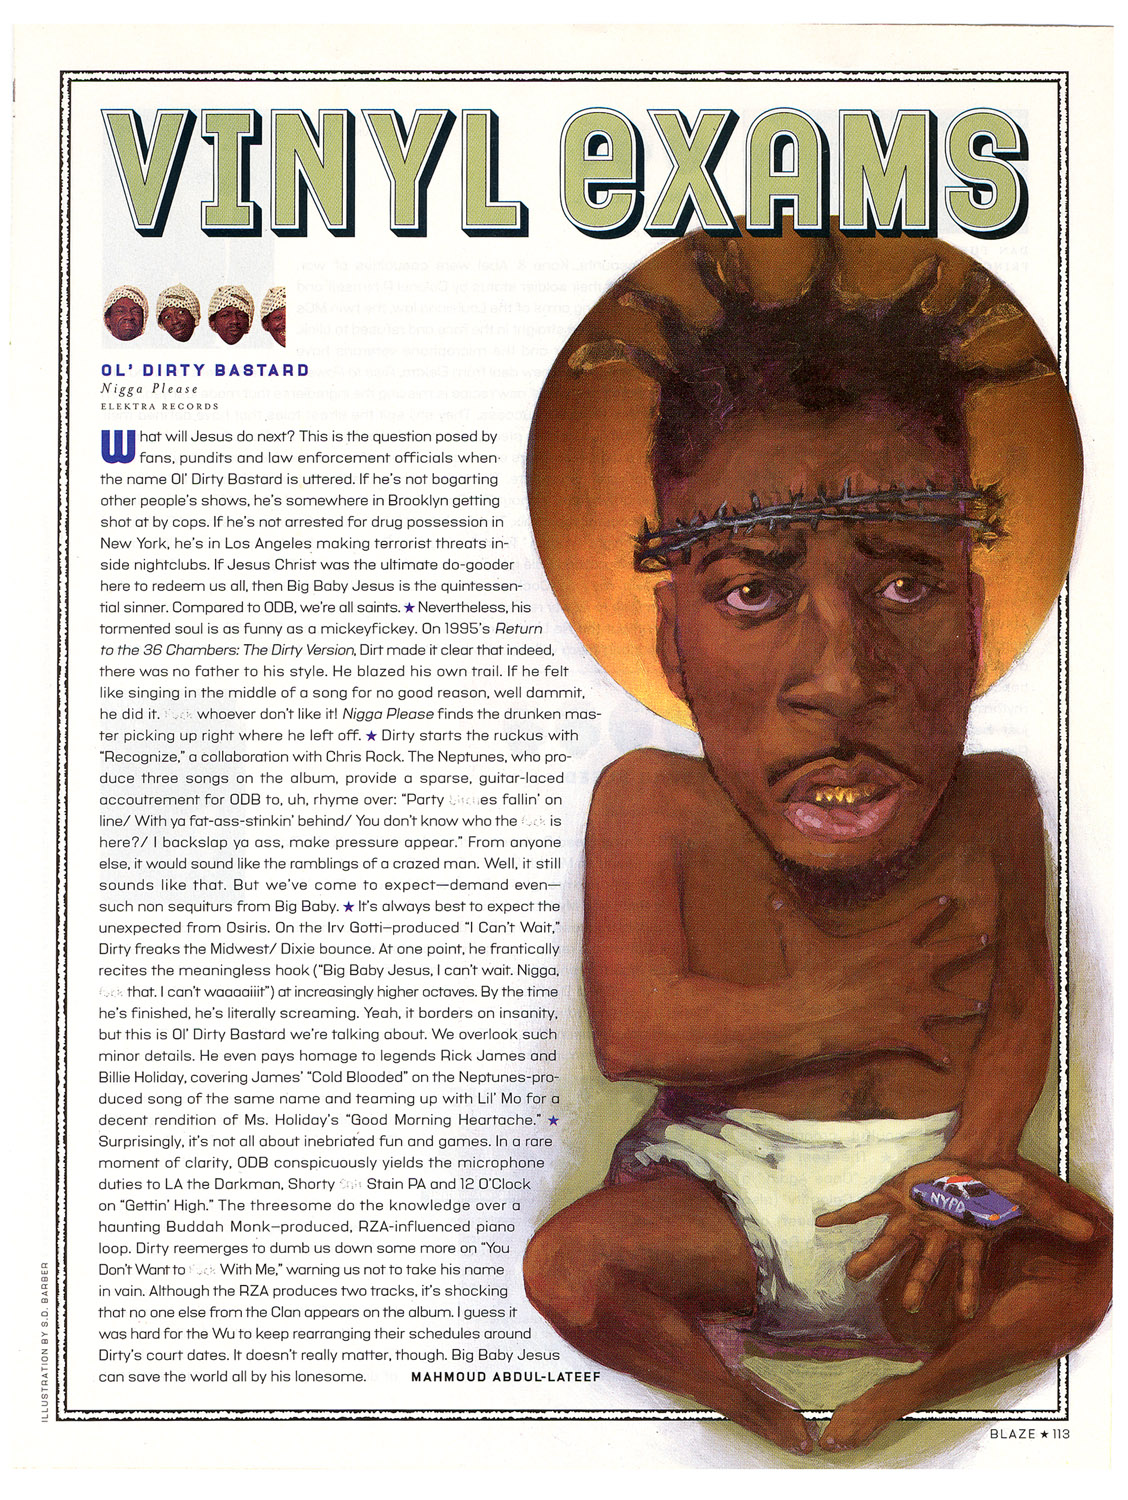 'ODB', for Blaze Magazine, 1999